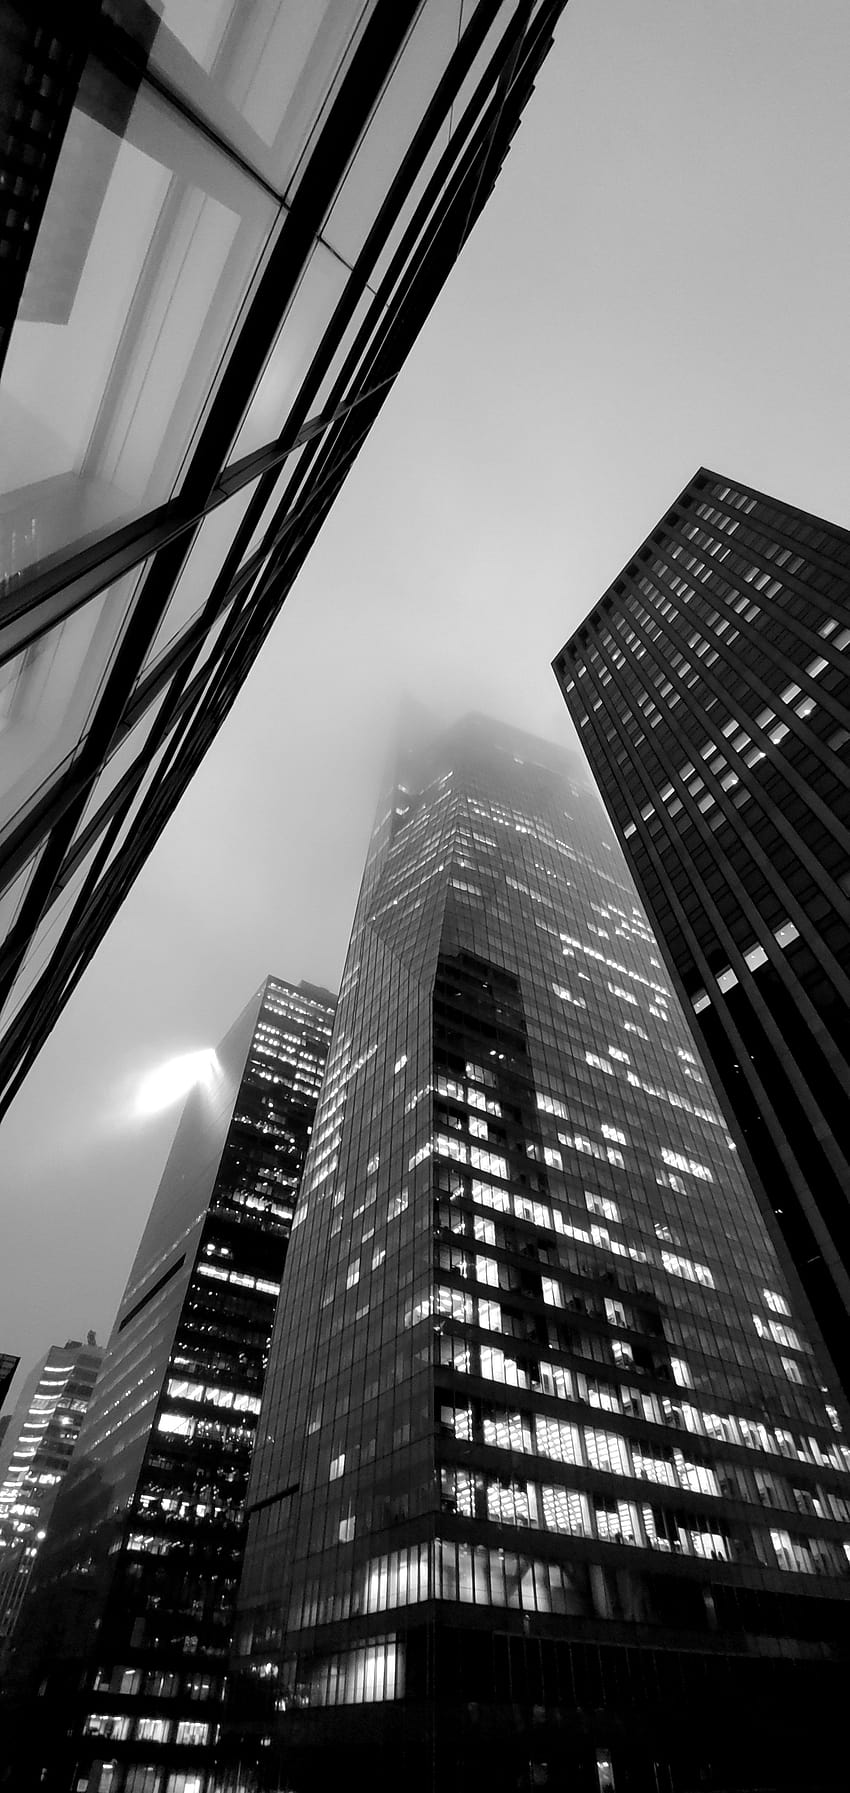 : New York City, nero, bianco, edificio, architettura, nuvole, monocromatico, grattacielo, verticale, grigio, visualizzazione verticale, coperto, nebbia, urbano, luci della città 2184x4608, ritratto in bianco e nero Sfondo del telefono HD